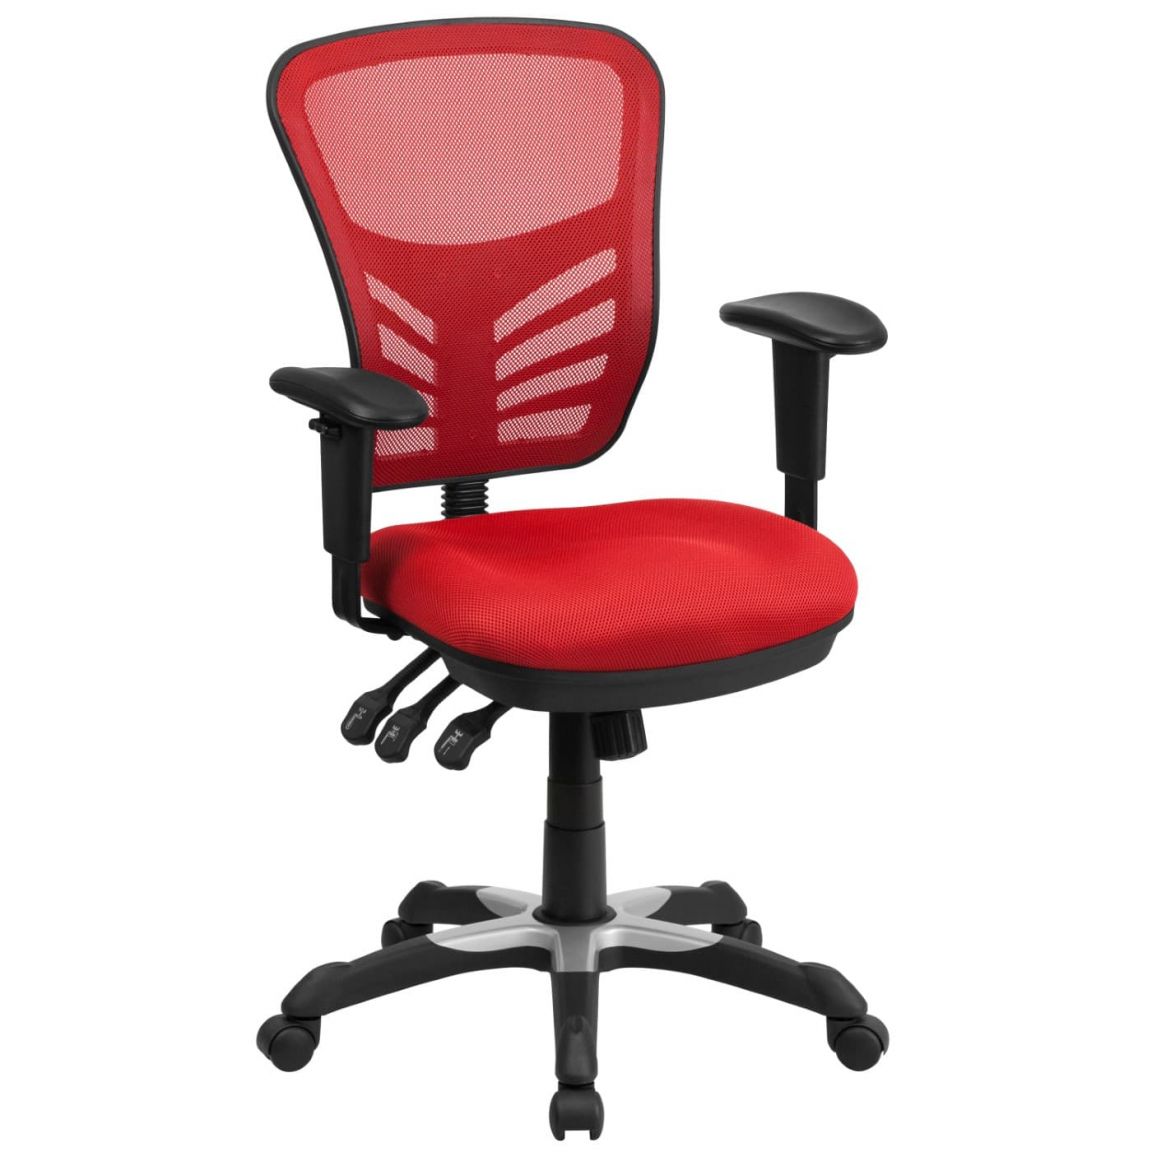 Đặt ghế văn phòng màu đỏ tại nơi công sở